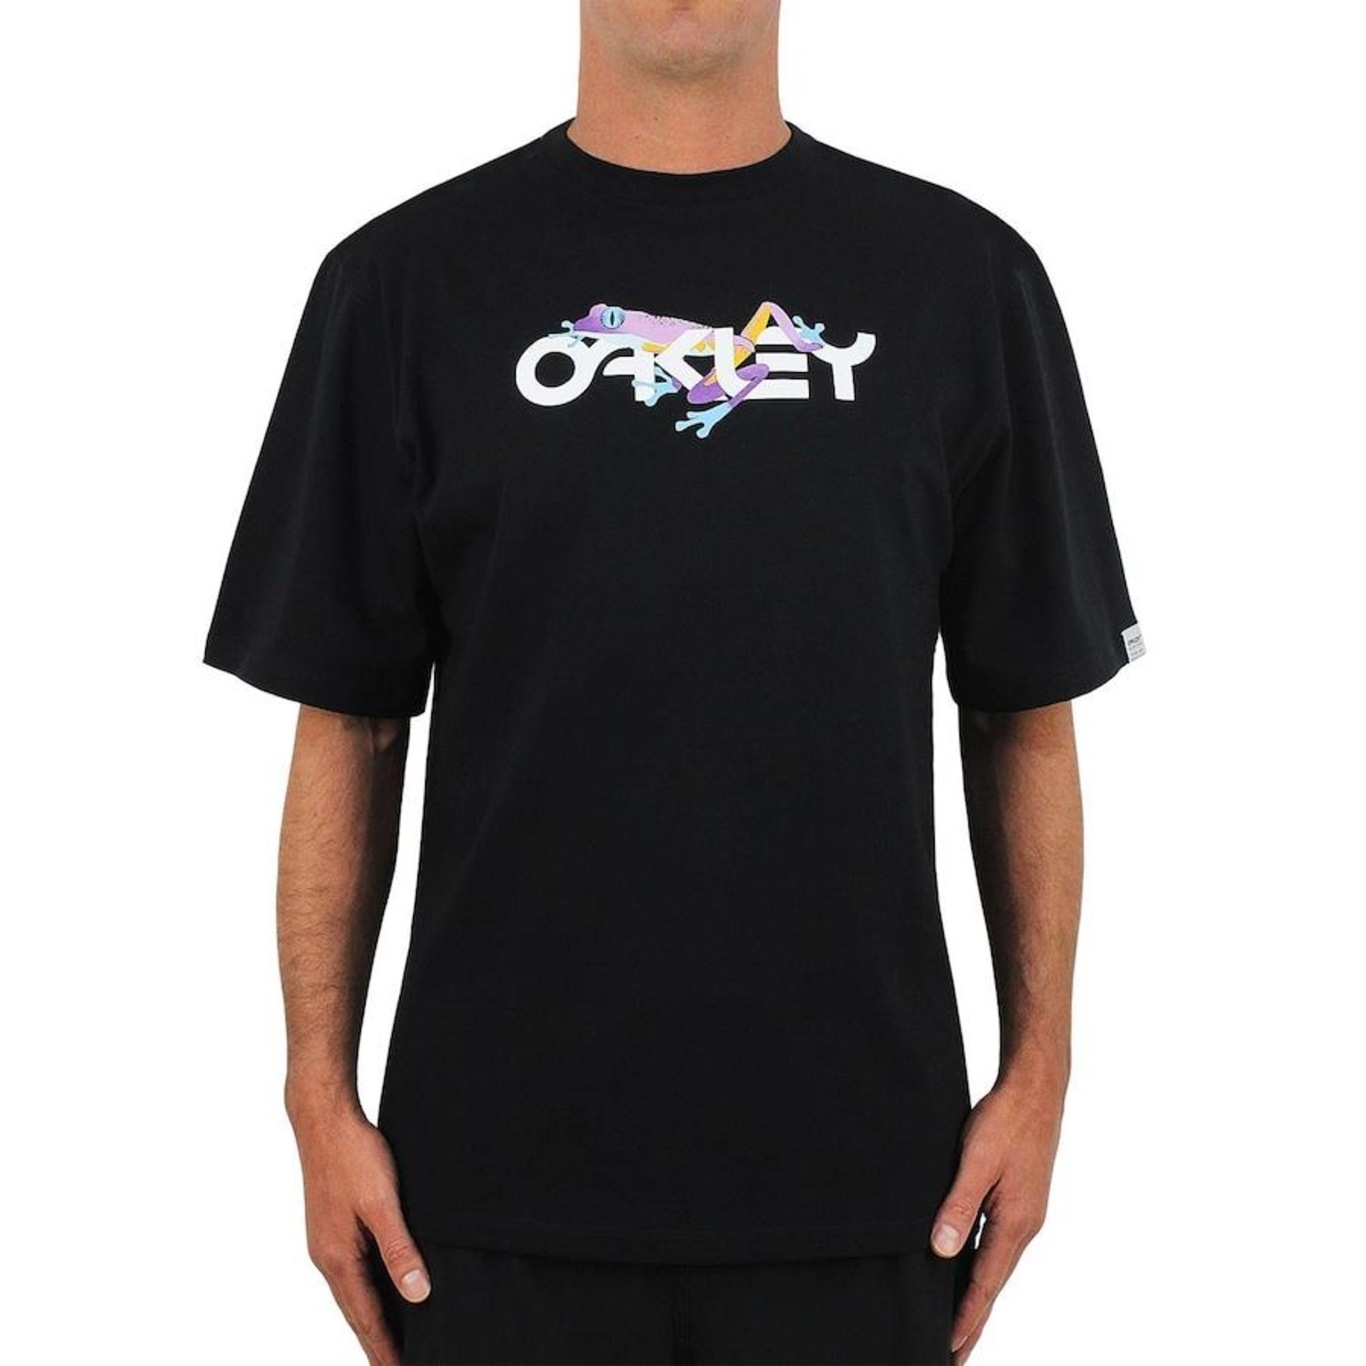 Camiseta Oakley Edição Especial Frog Graphic Tee Original - Masculina